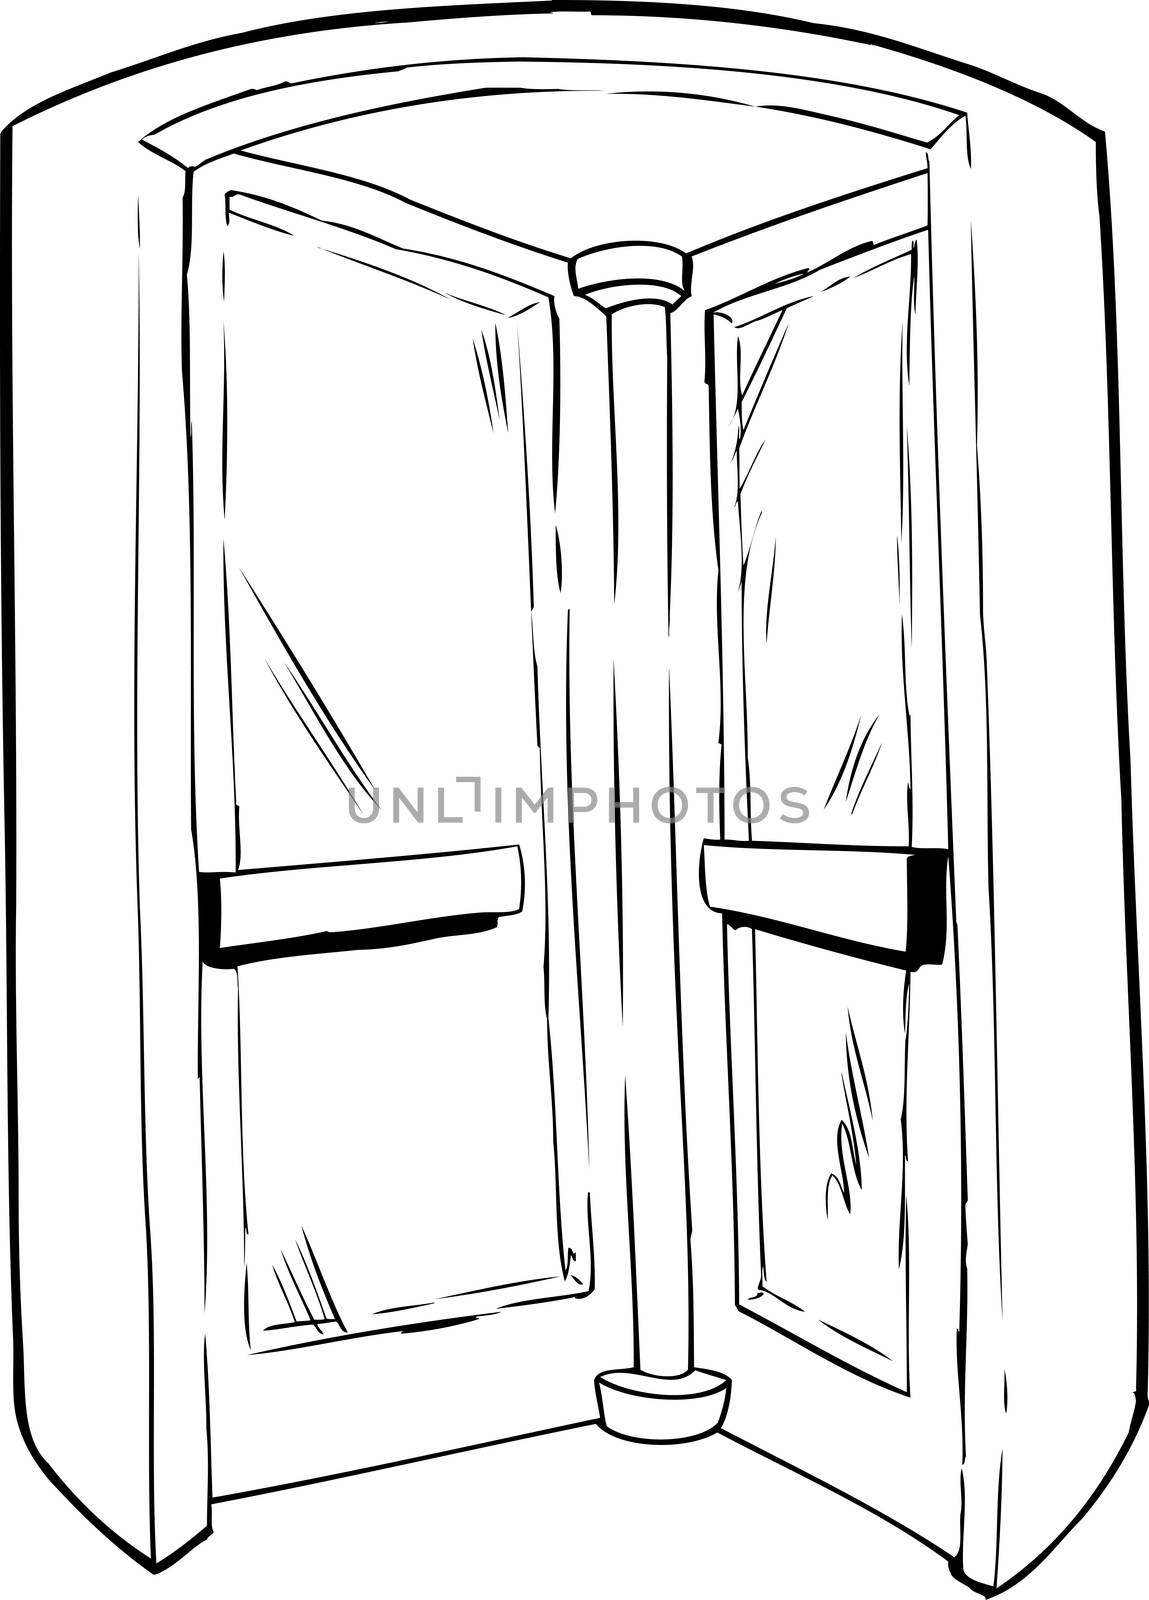 Outilned illustration of revolving door in doorway